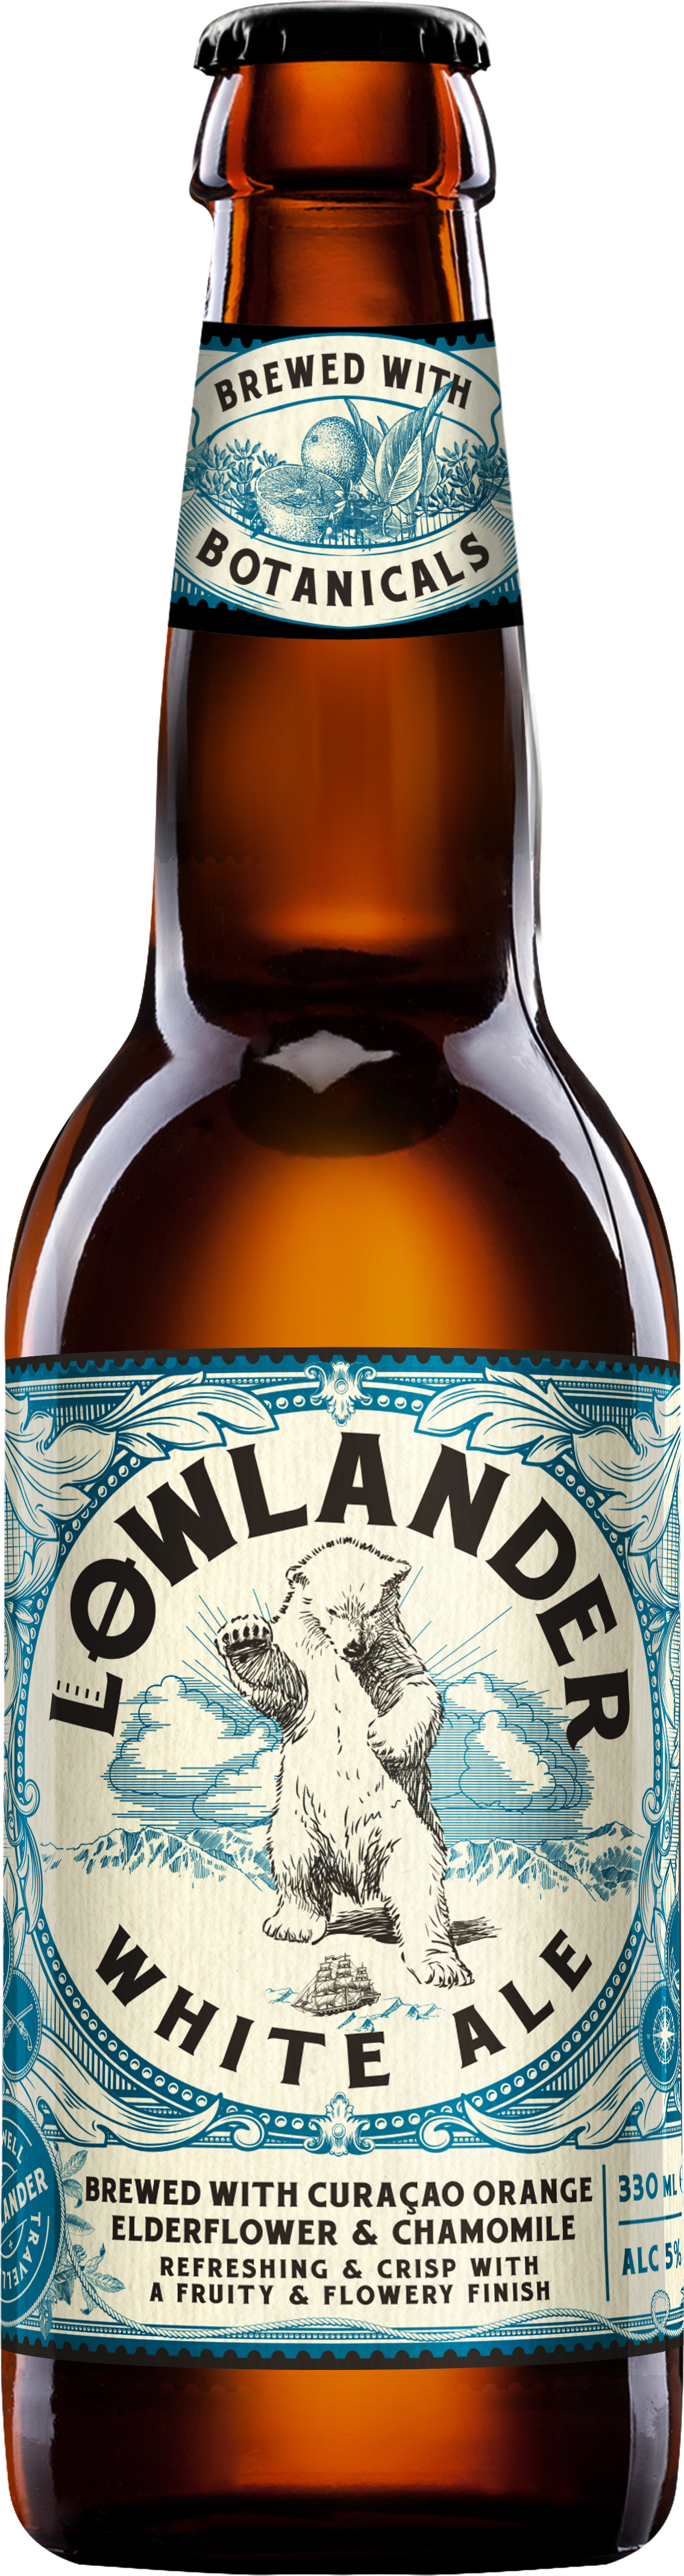 Lowlander White Ale Doos 12x33 cl 5%